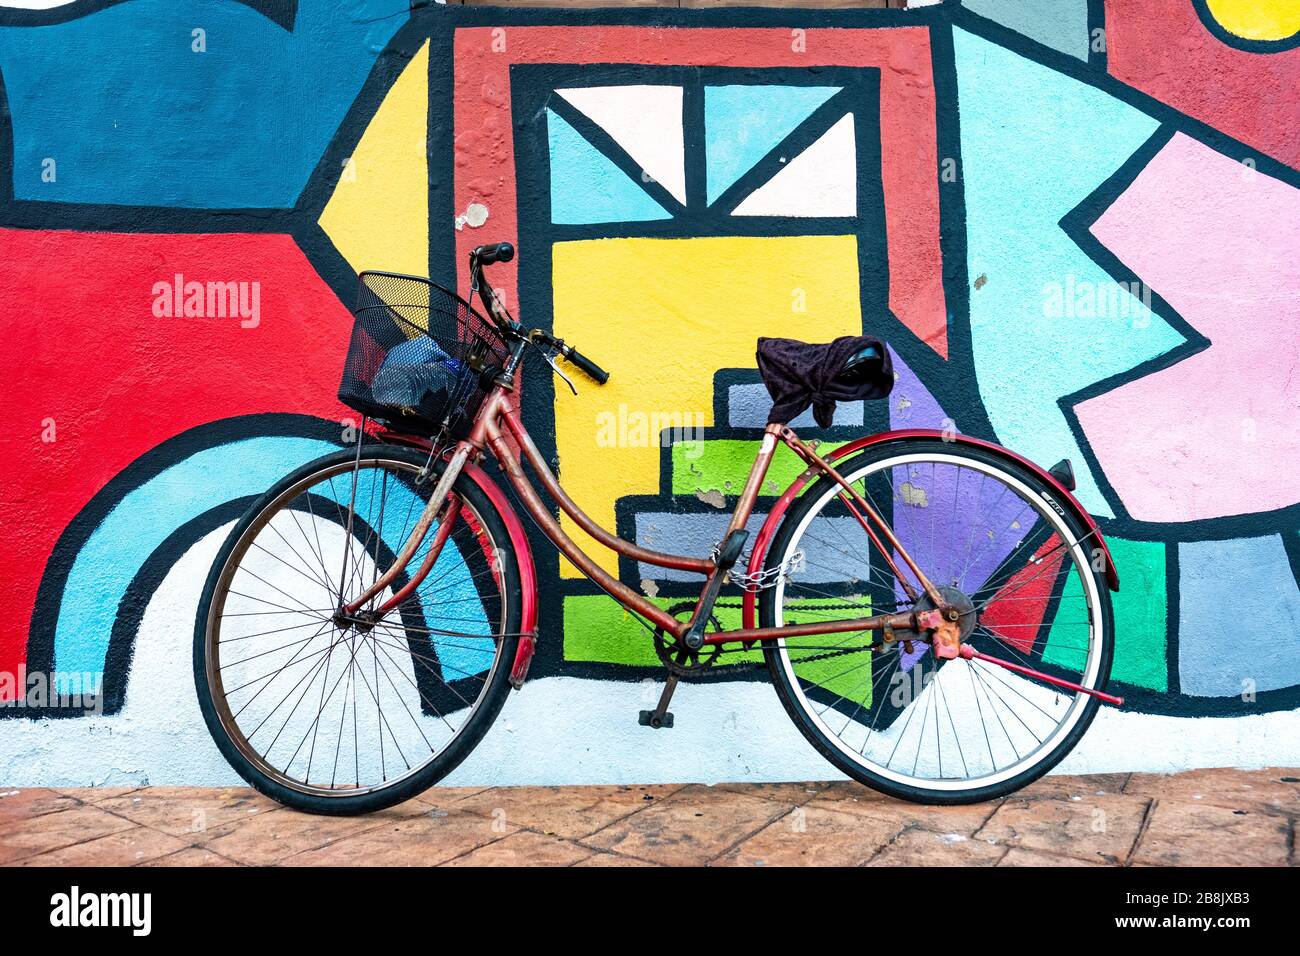 Una bicicleta en la colorida calle Malaca, una popular ciudad turística costera famosa por su comida y edificios históricos Foto de stock